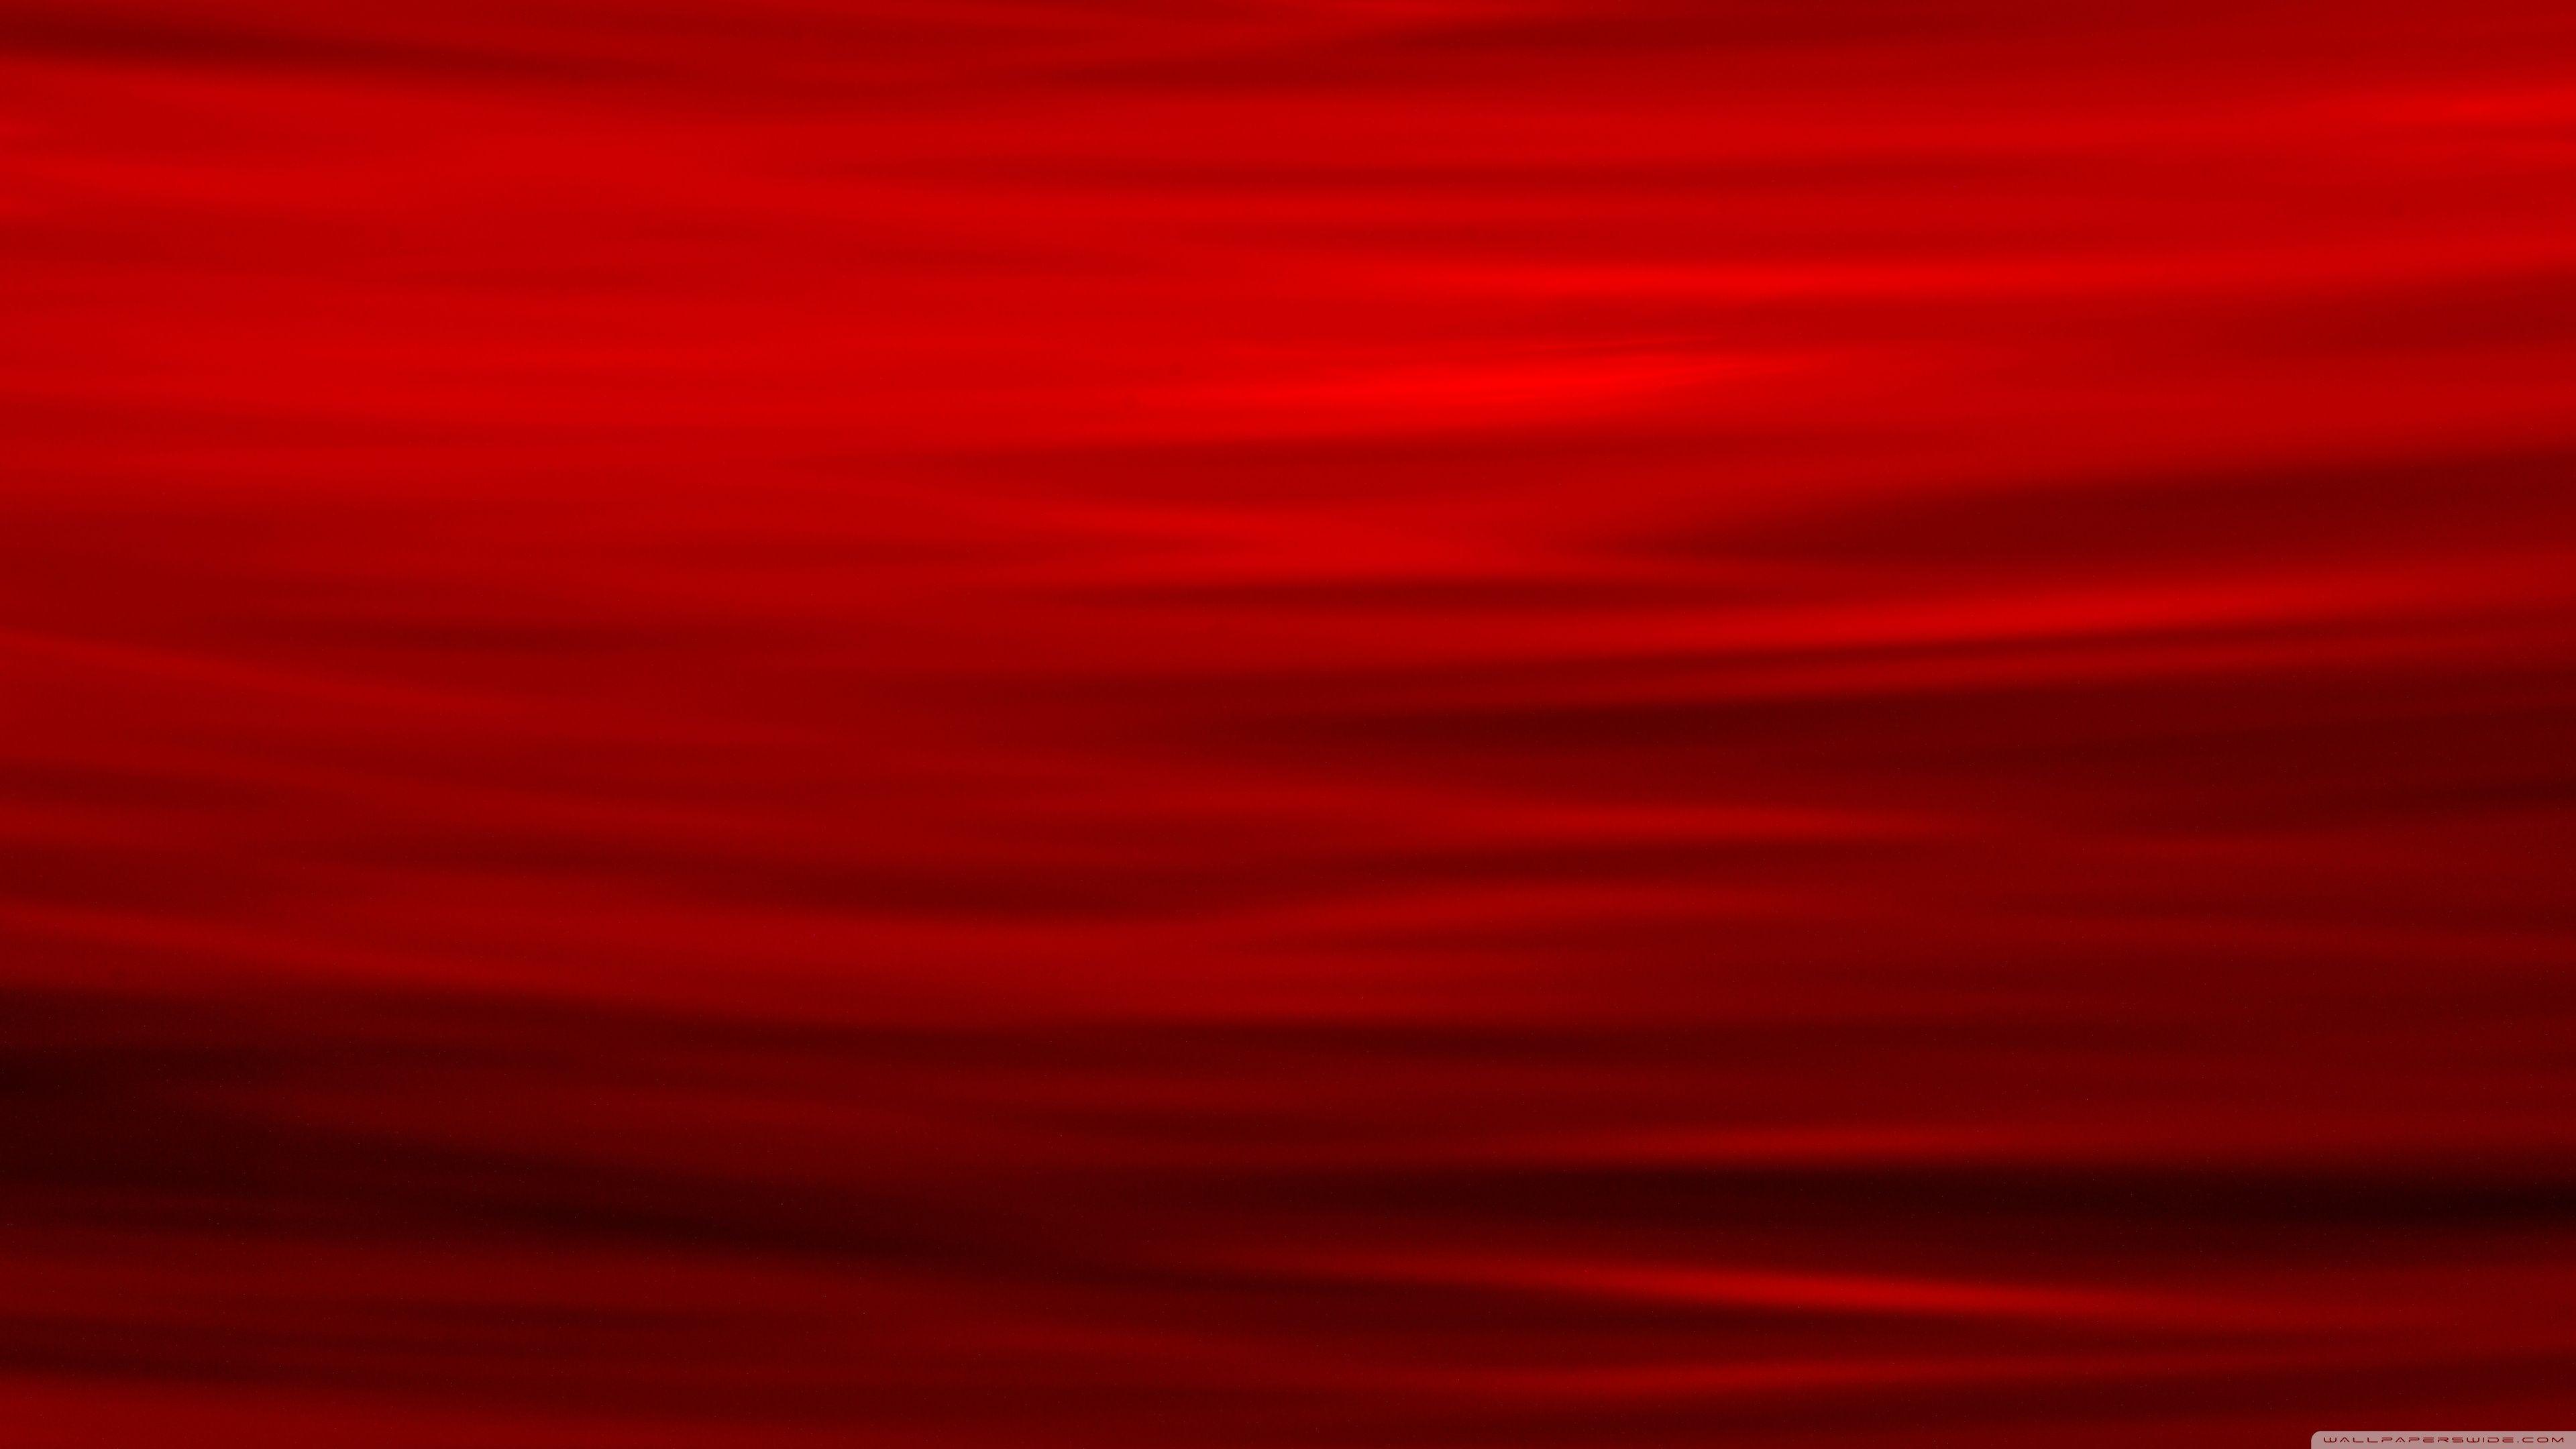 Dark Red: Màu đỏ đậm luôn là một lựa chọn tuyệt vời cho các bức ảnh. Hãy xem qua các mẫu hình ảnh với tone màu ấm áp này để cảm nhận tình cảm và trọn vẹn!